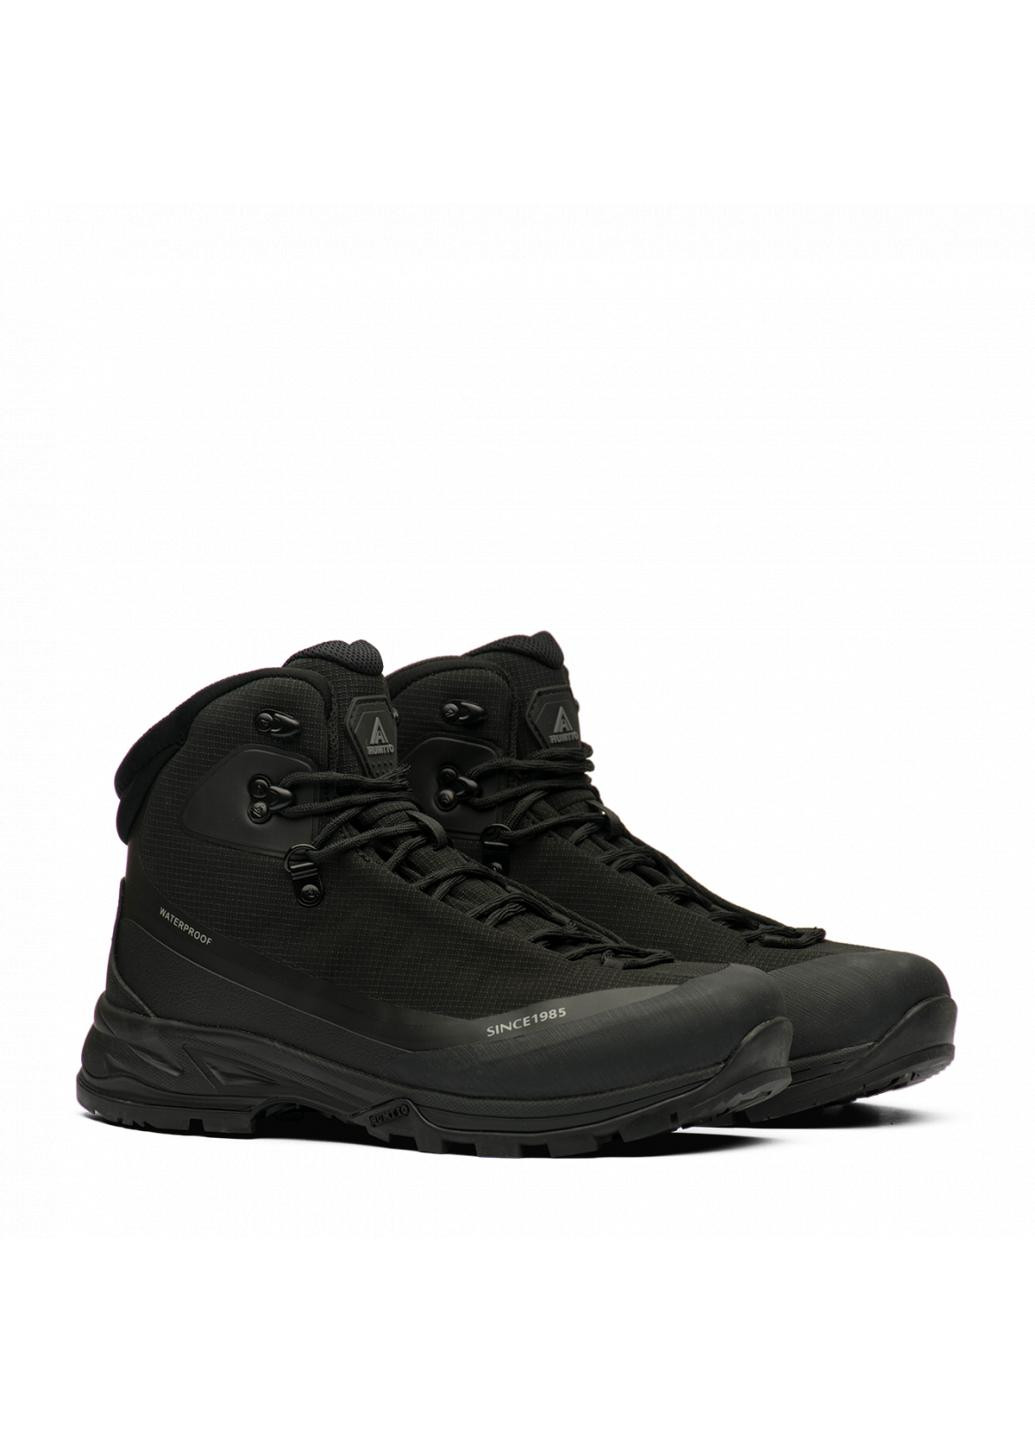 Черные зимние ботинки мужские 230189a1 Humtto